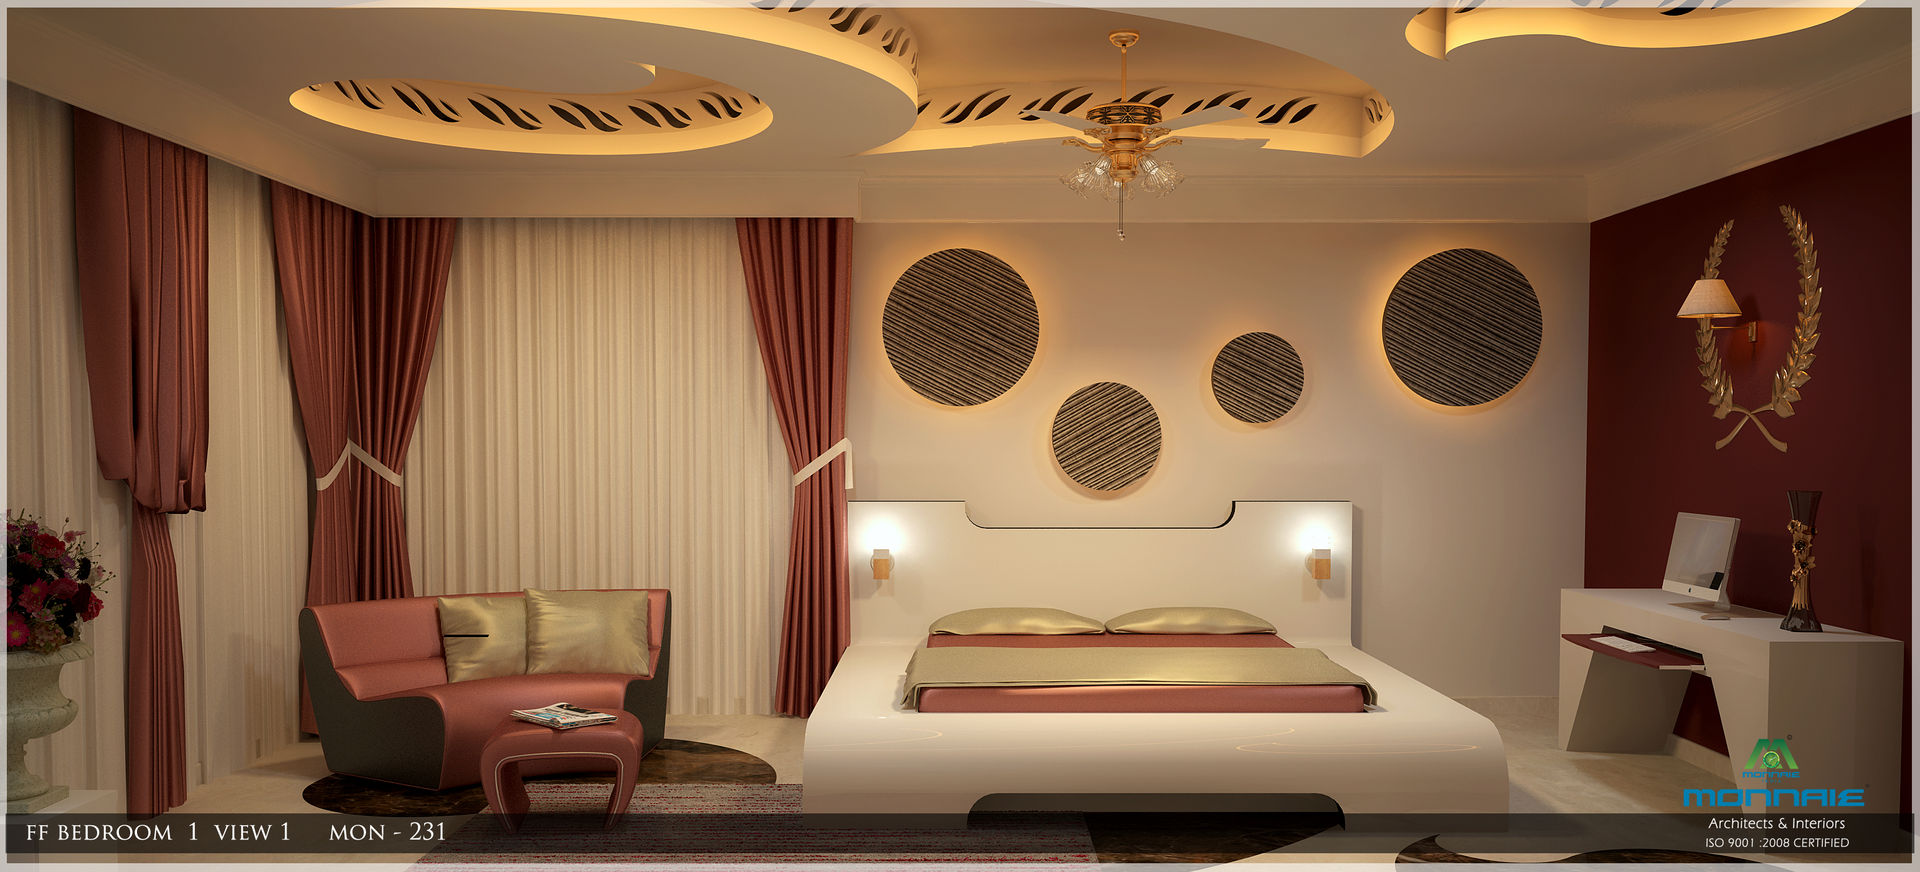 Fabulous Interior Design in Arabian Style, Premdas Krishna Premdas Krishna Chambre asiatique